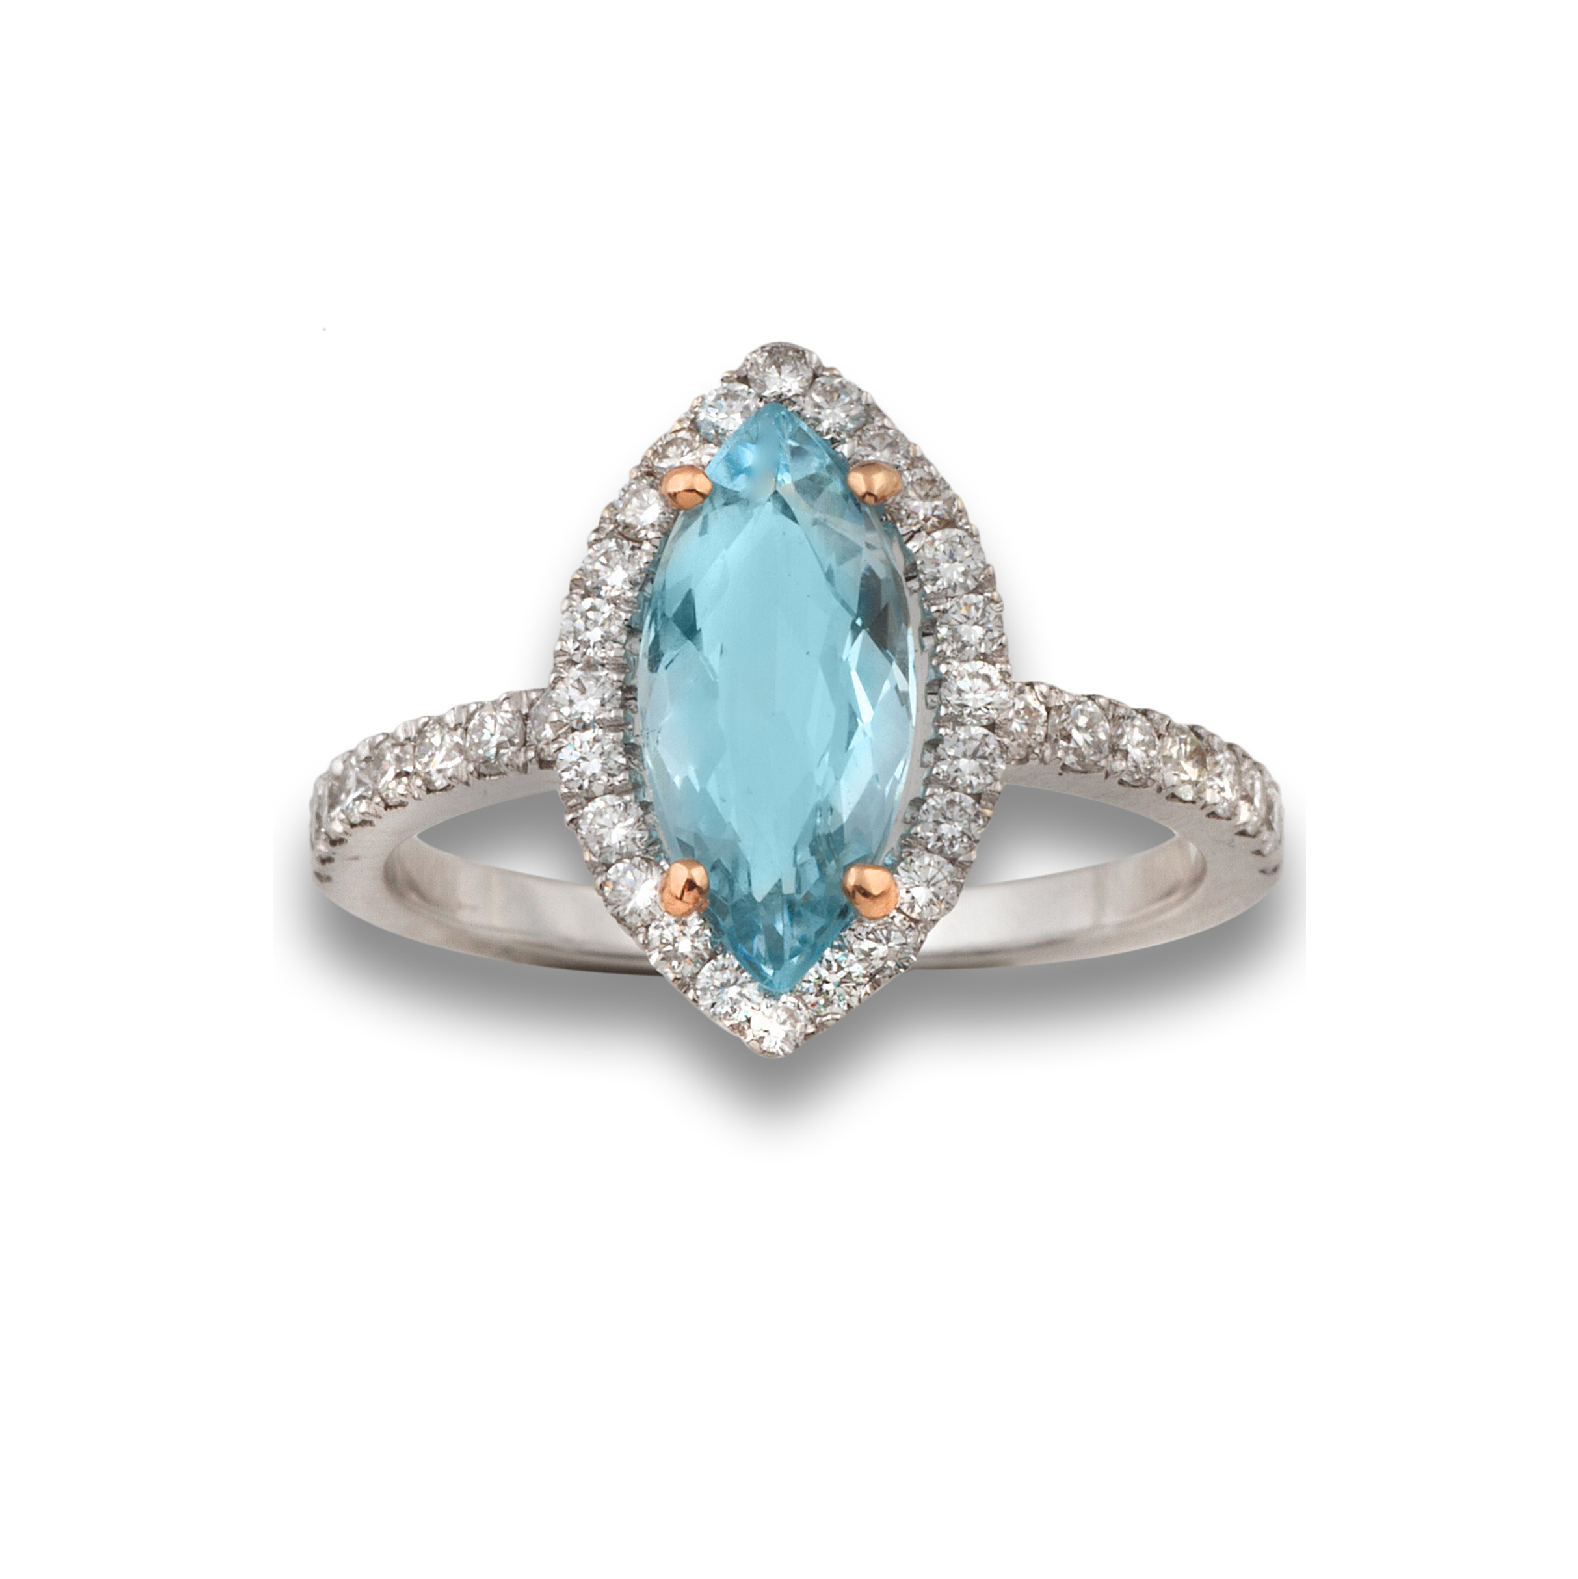 Marquise aquamarine ring